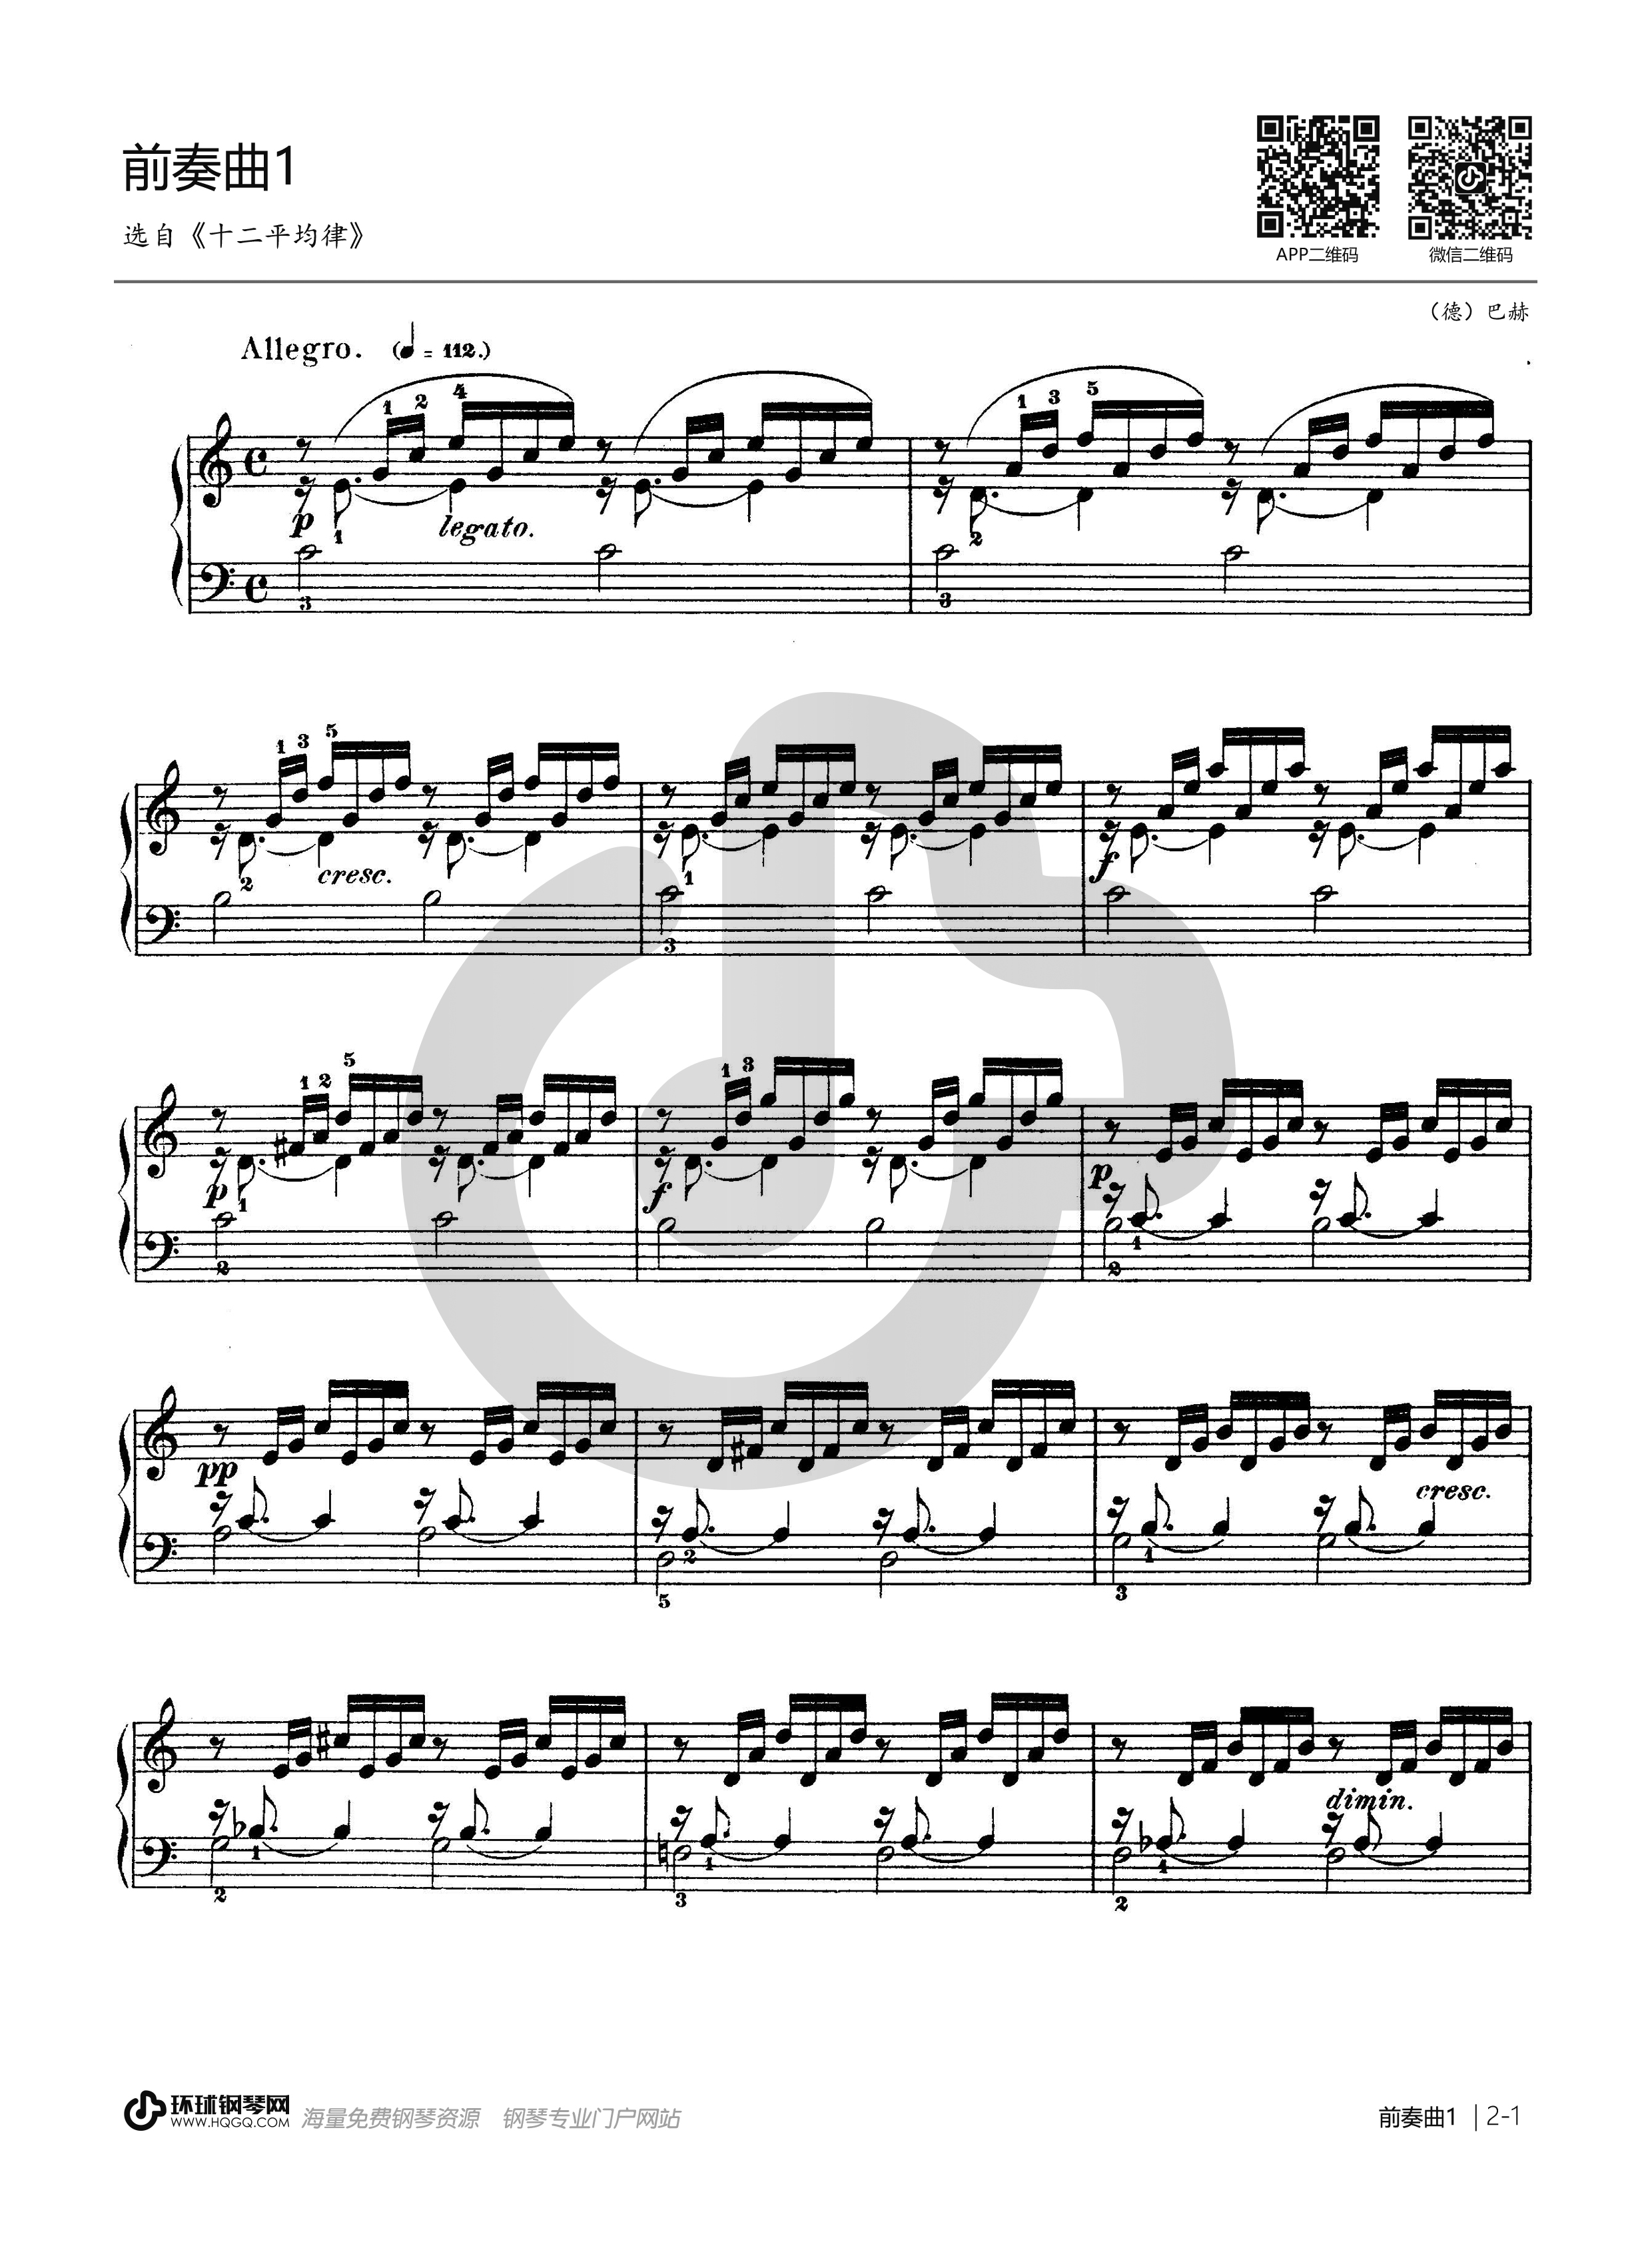 巴赫《抒情调》（选自:哥德堡变奏曲）- 马克西姆钢琴谱-马克西姆巴赫《抒情调》钢琴谱-环球钢琴网